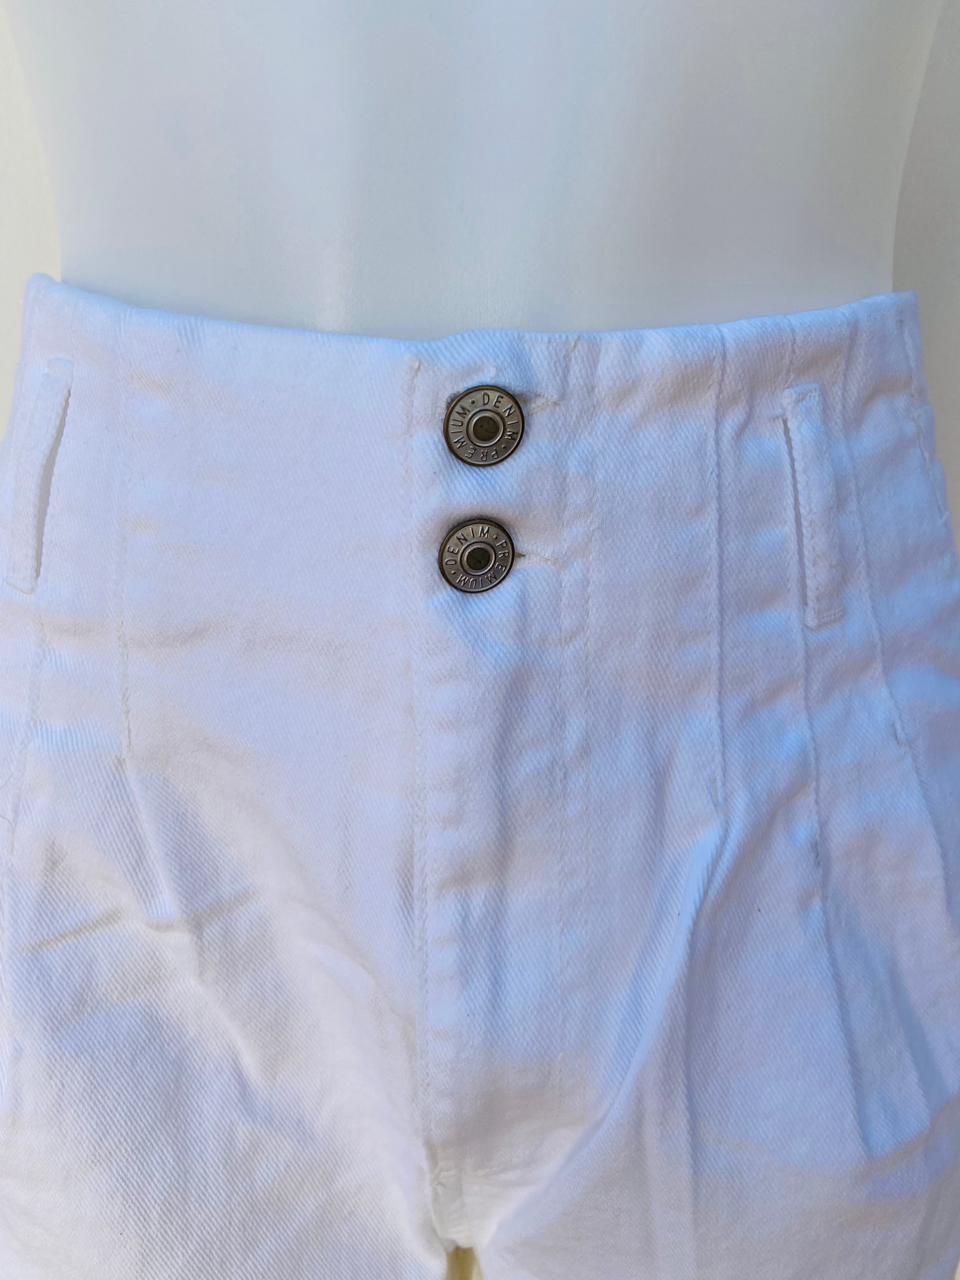 Short Fashion Nova origina, blanco talla alta con dos botones en en el centro con letras PREMIUM DENIM, con dobladillo estilo mom short WAIST DENIM